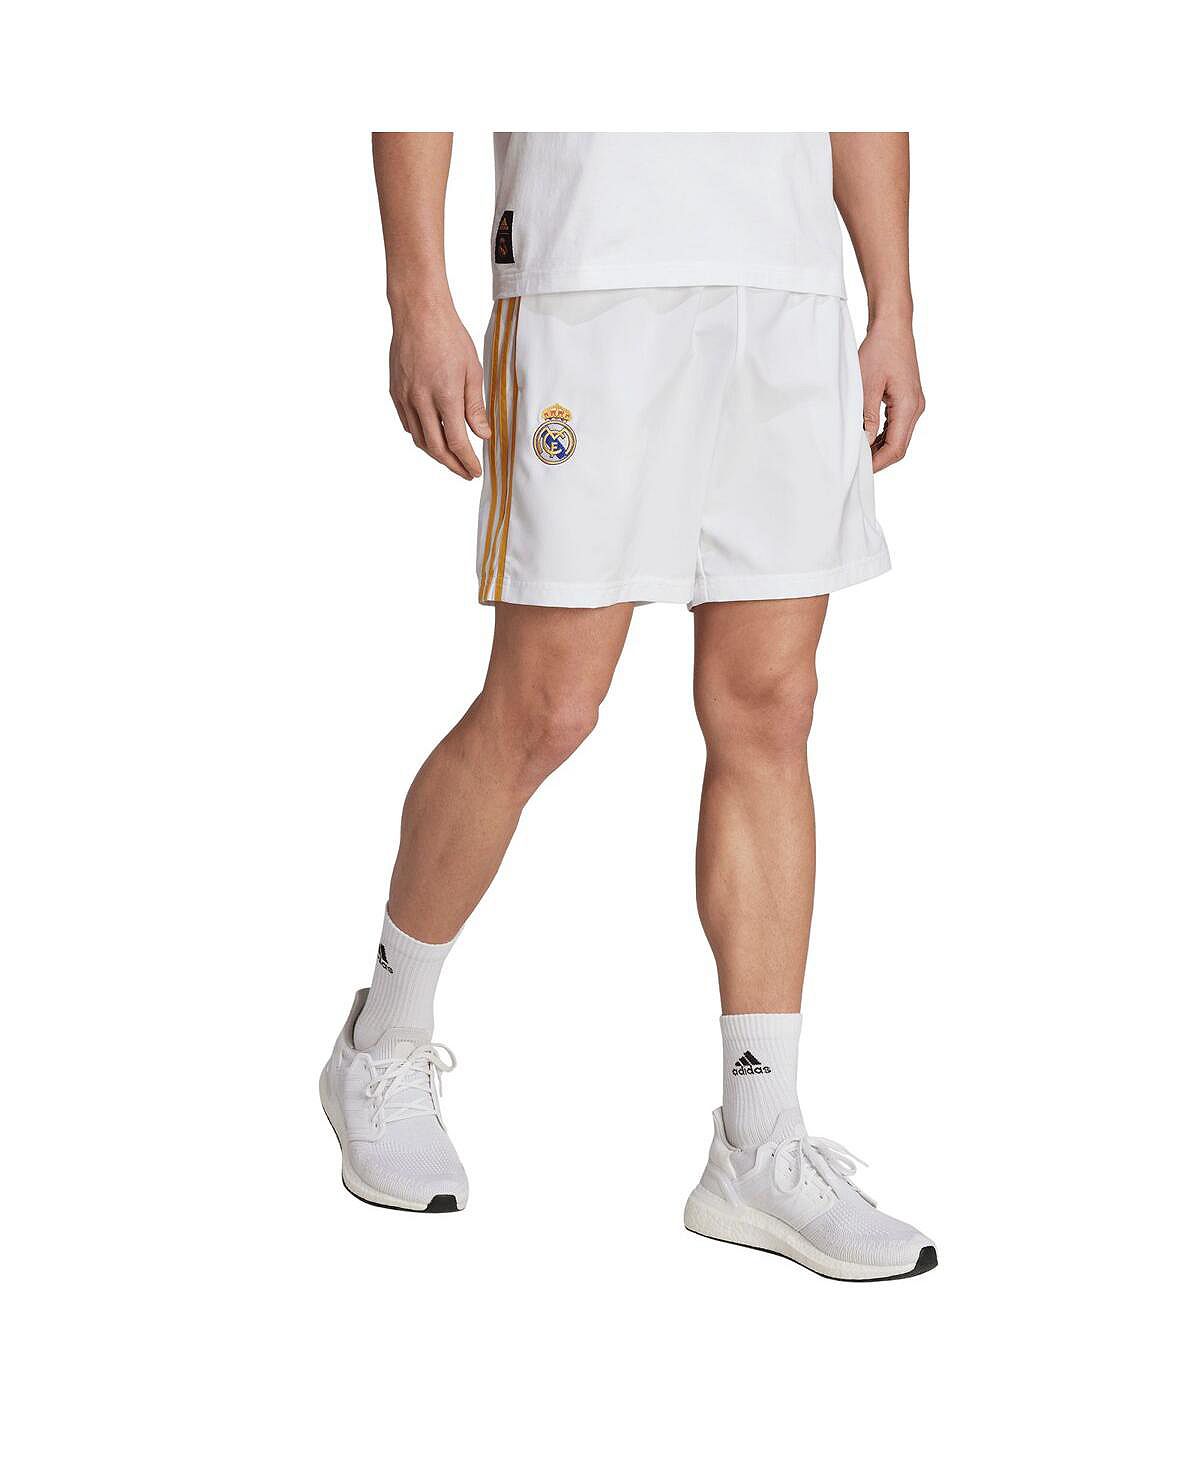 Мужские белые шорты Real Madrid DNA adidas